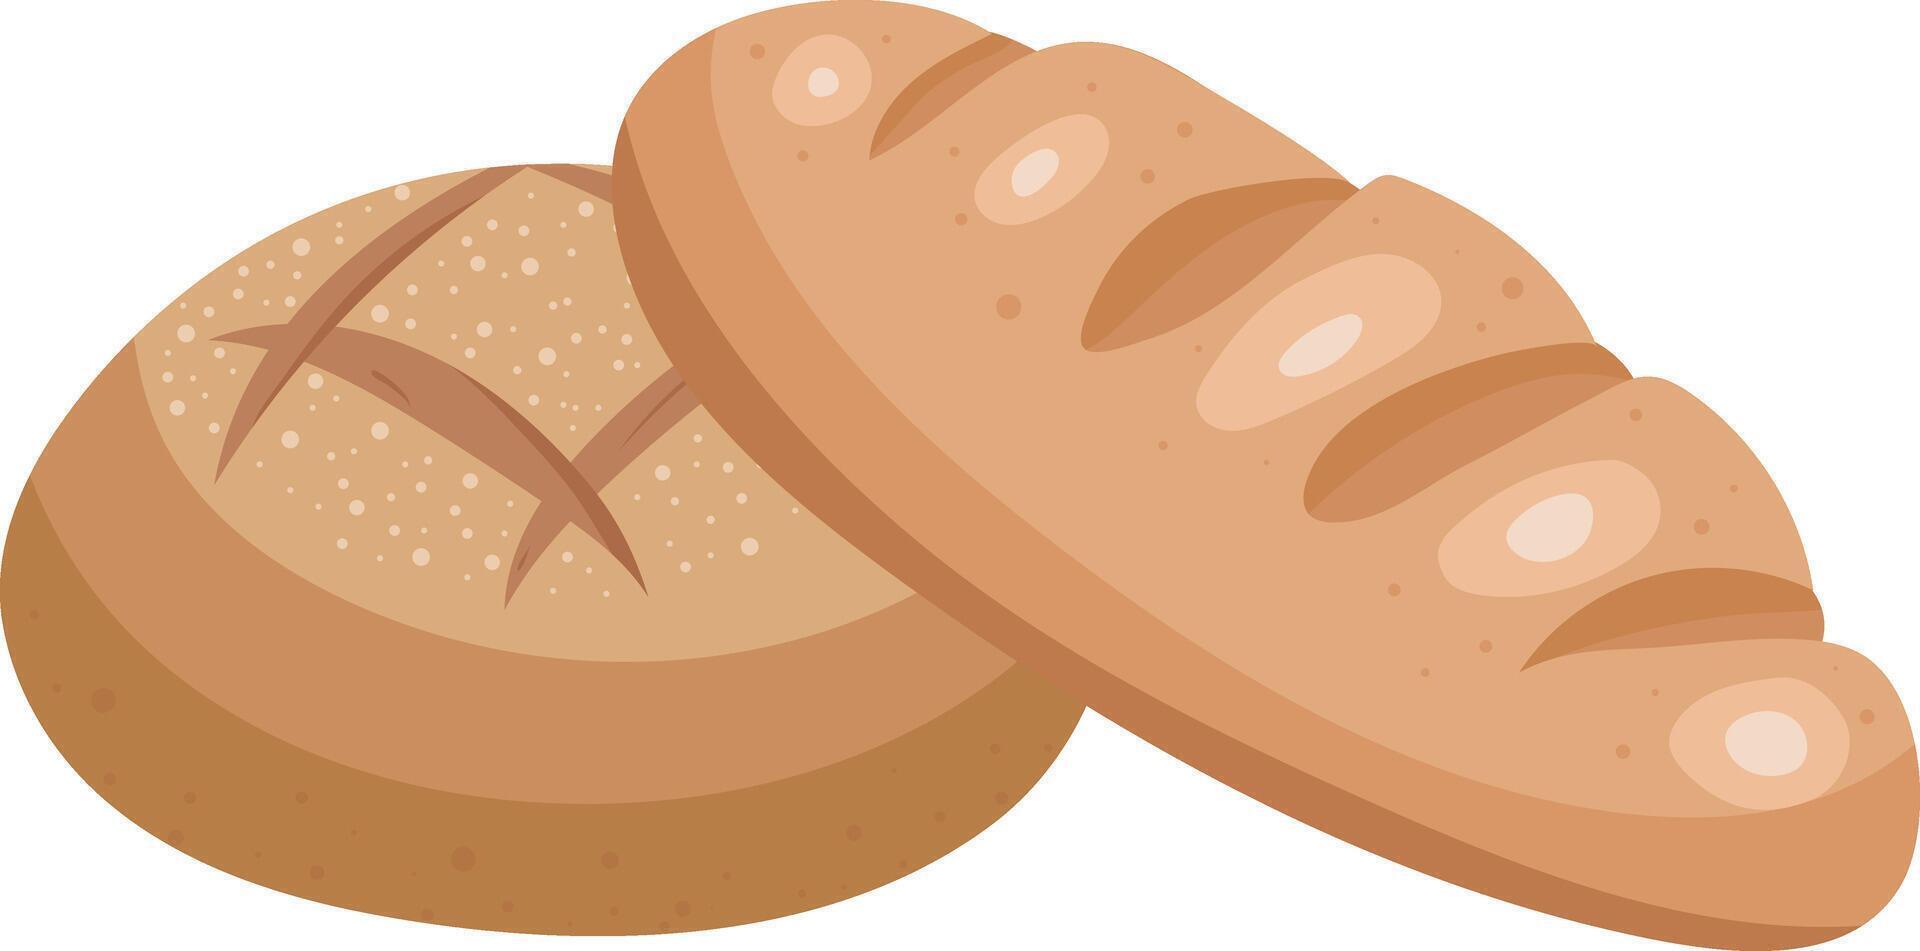 pão Melão pão cesta grandes baguete ilustração gráfico elemento arte cartão vetor